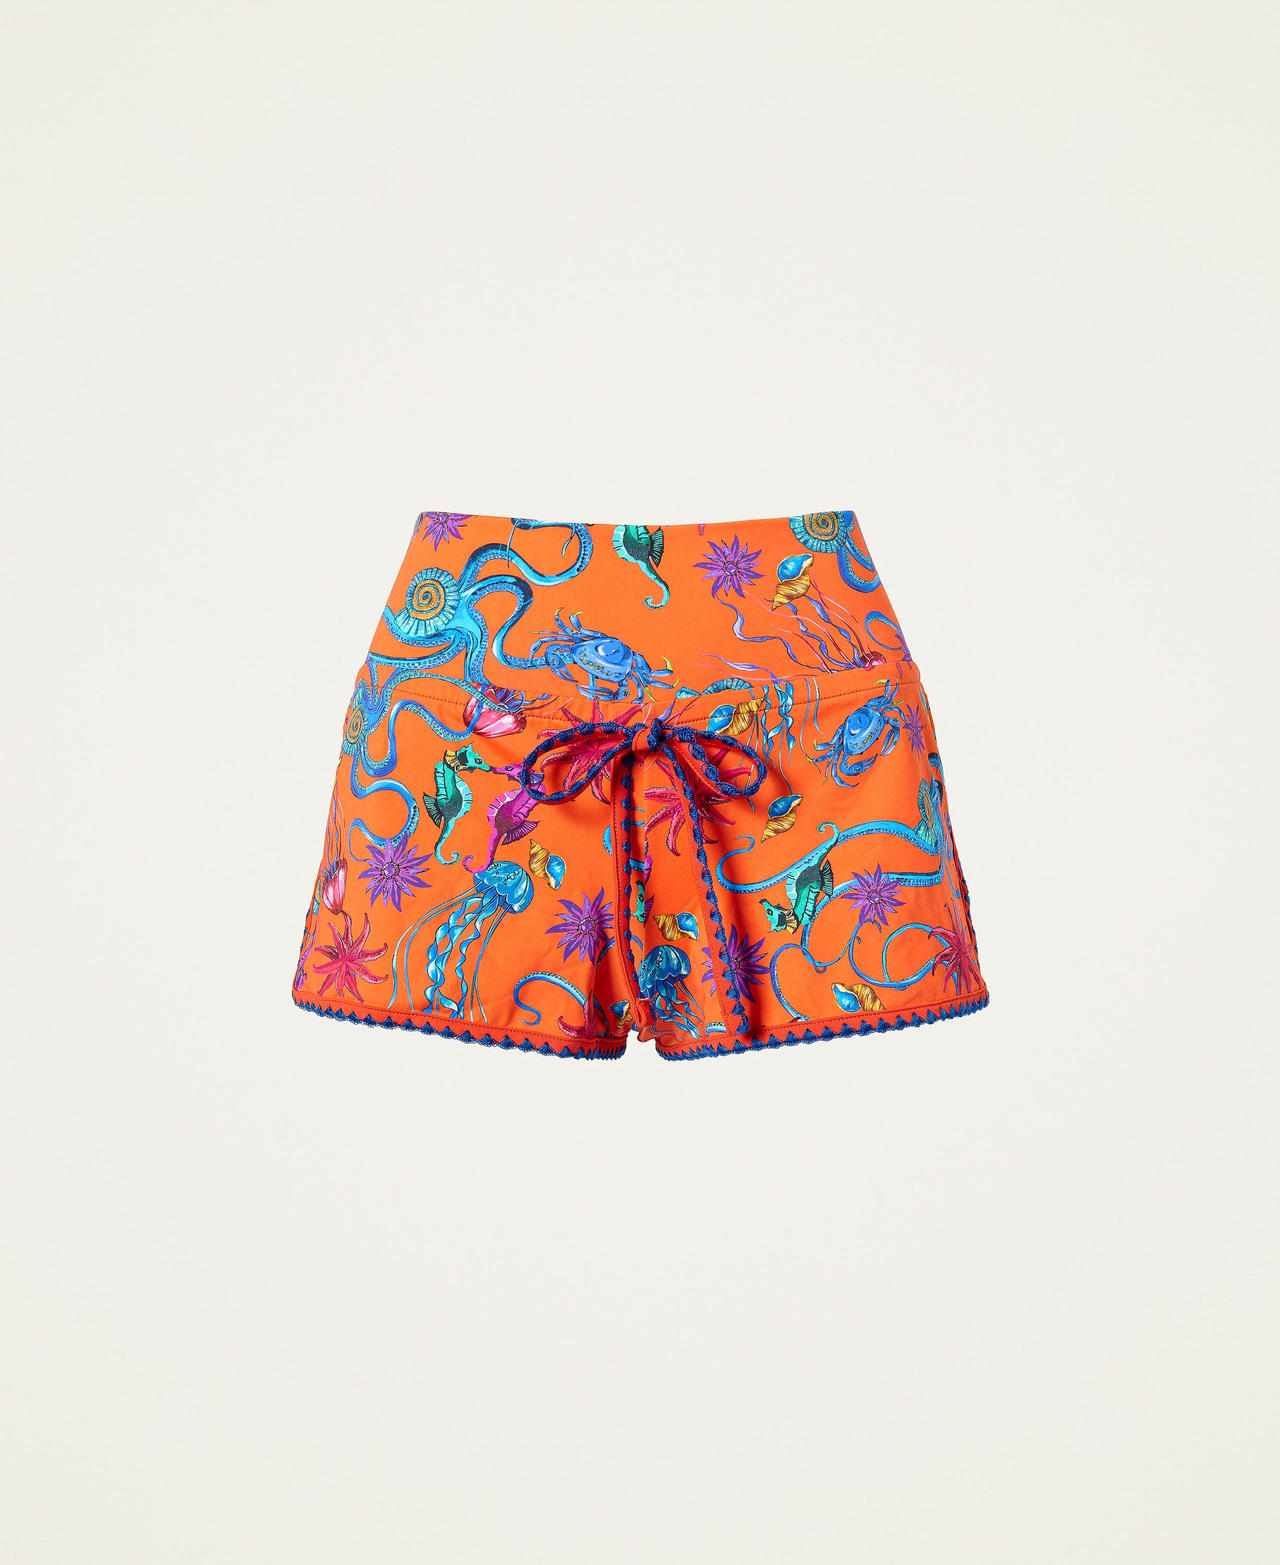 Shorts con estampado y bordado Naranja «Orange Sun» Mujer 221LBMAYY-0S